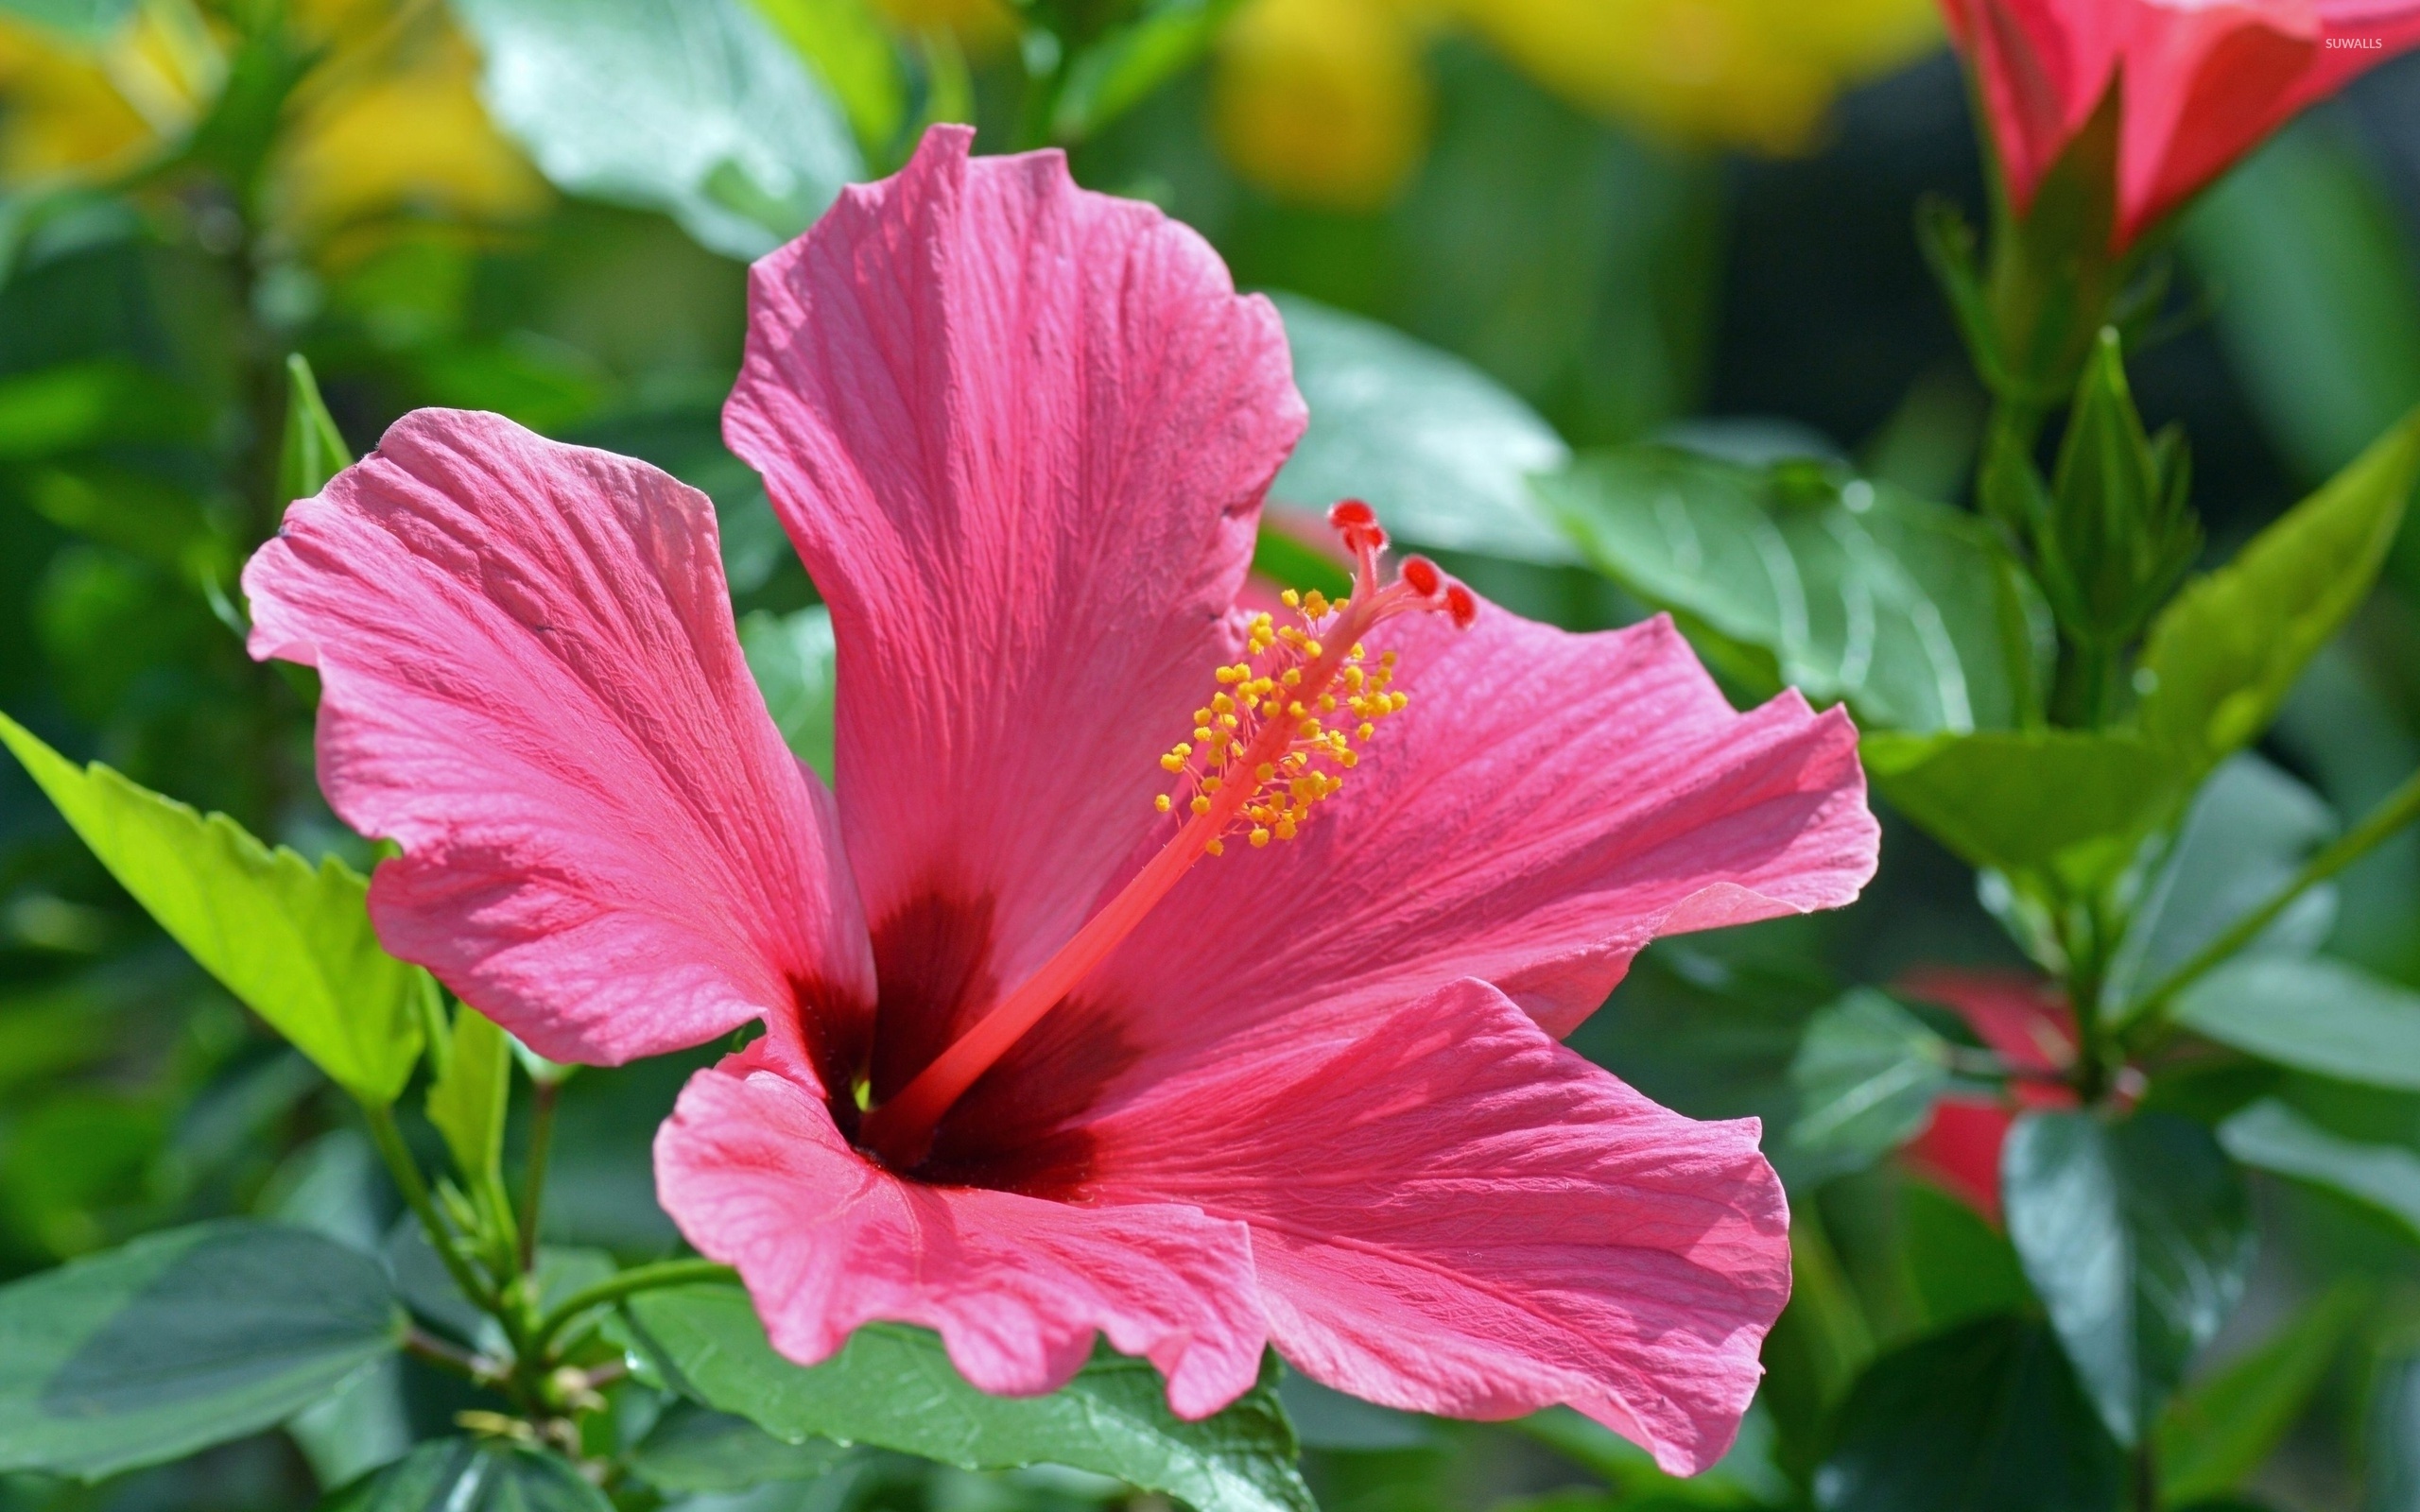 Hibiscus wallpaper, Floral bliss, Stunning flower wallpapers, Nature's beauty, 2560x1600 HD Desktop